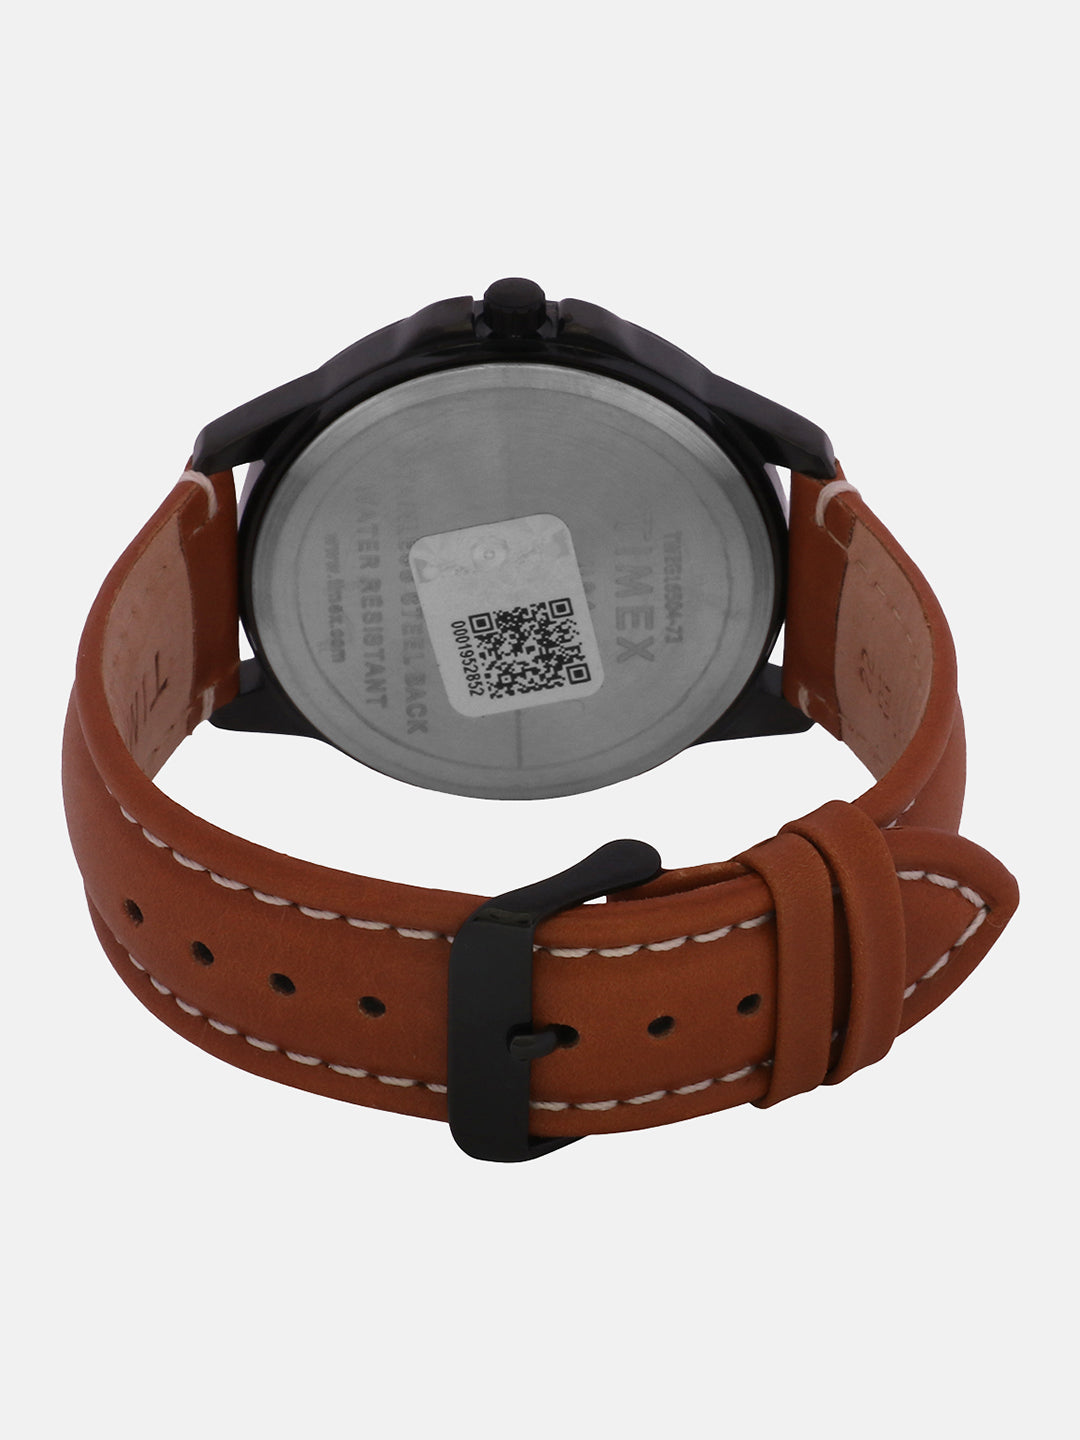 Timex Brown Dial Men Analog Watch - TWEG16504